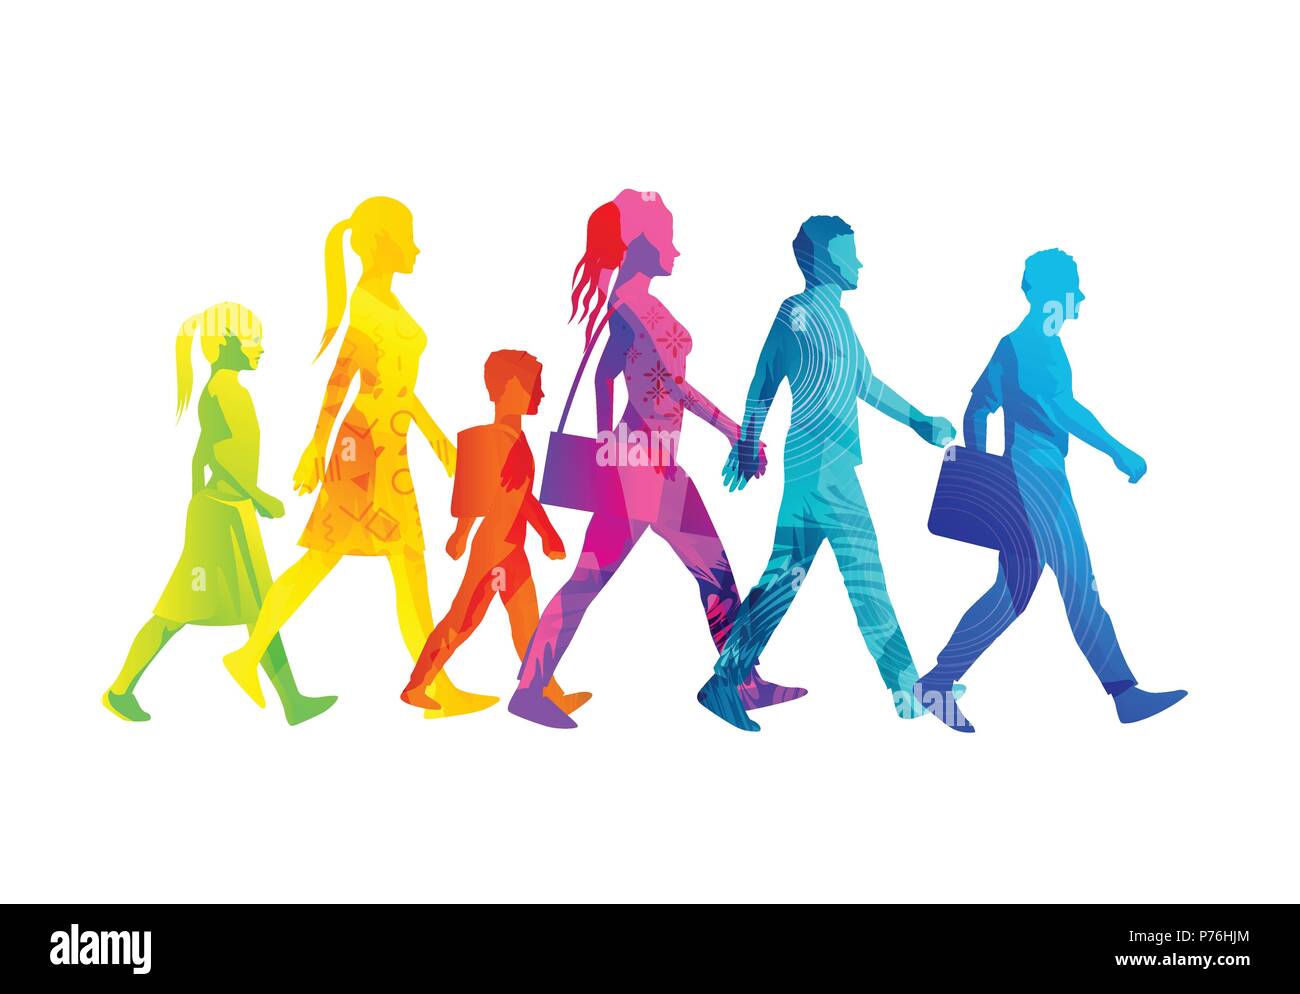 Una selezione di persone sagome a piedi tra cui i bambini, le donne e gli uomini. Texture colorata illustrazione vettoriale. Illustrazione Vettoriale